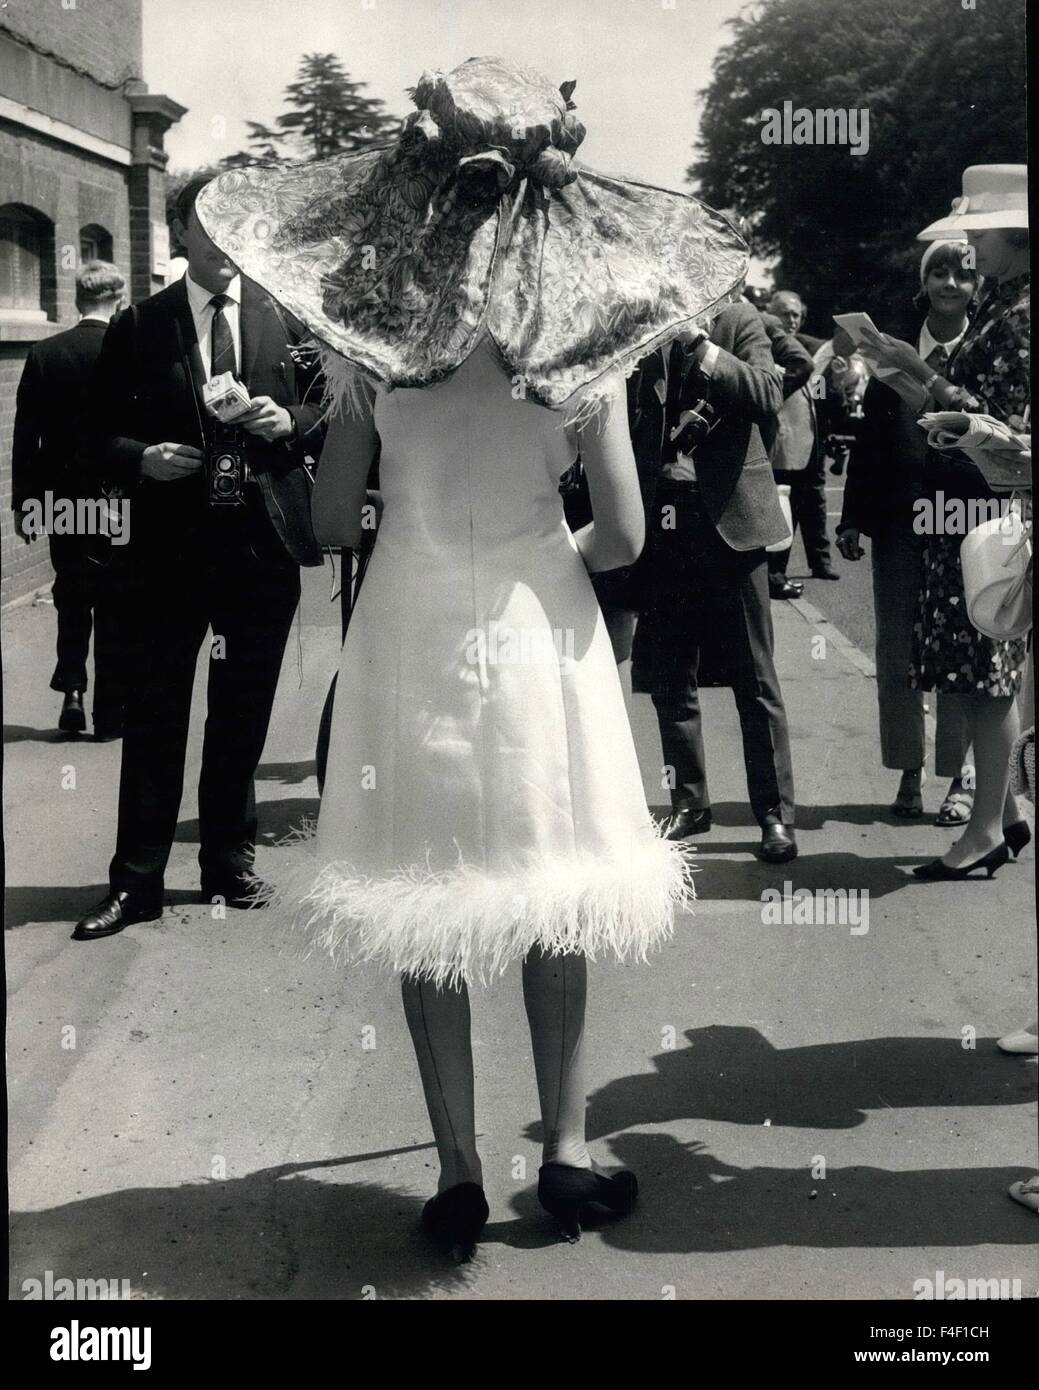 1964 - La première journée de la réunion Mode à Royal Ascot Ascot : Cette grande butterfly hat a été portée par Mme James Elliott lorsqu'elle est arrivée pour l'Ascot réunion aujourd'hui. © Keystone Photos USA/ZUMAPRESS.com/Alamy Live News Banque D'Images